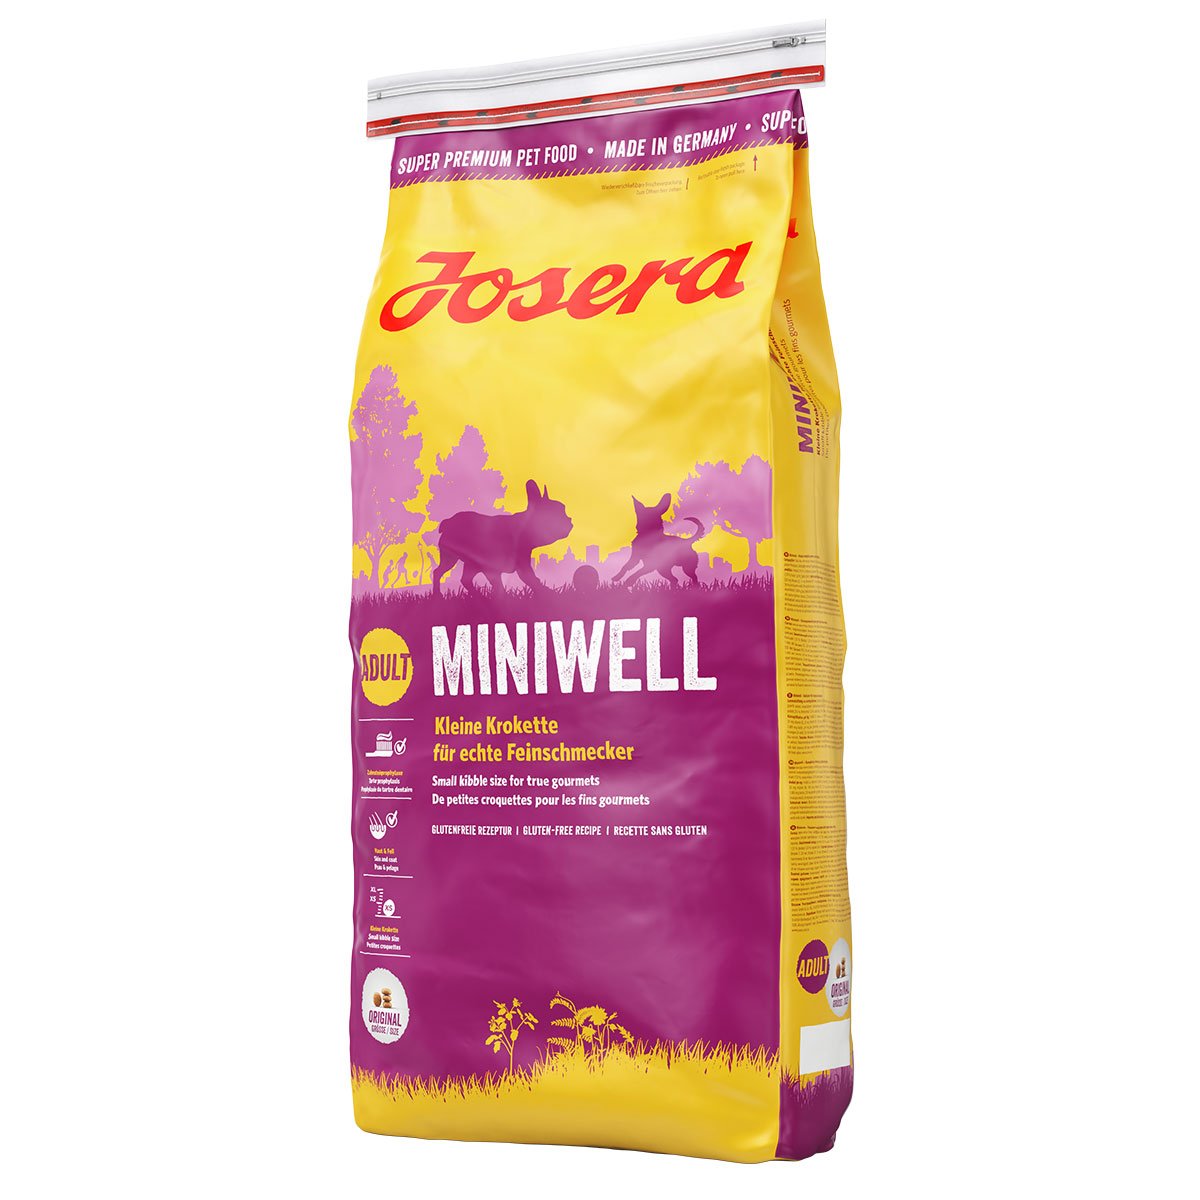 Josera Miniwell Adult 2x15kg – mit 20% Rabatt günstig kaufen